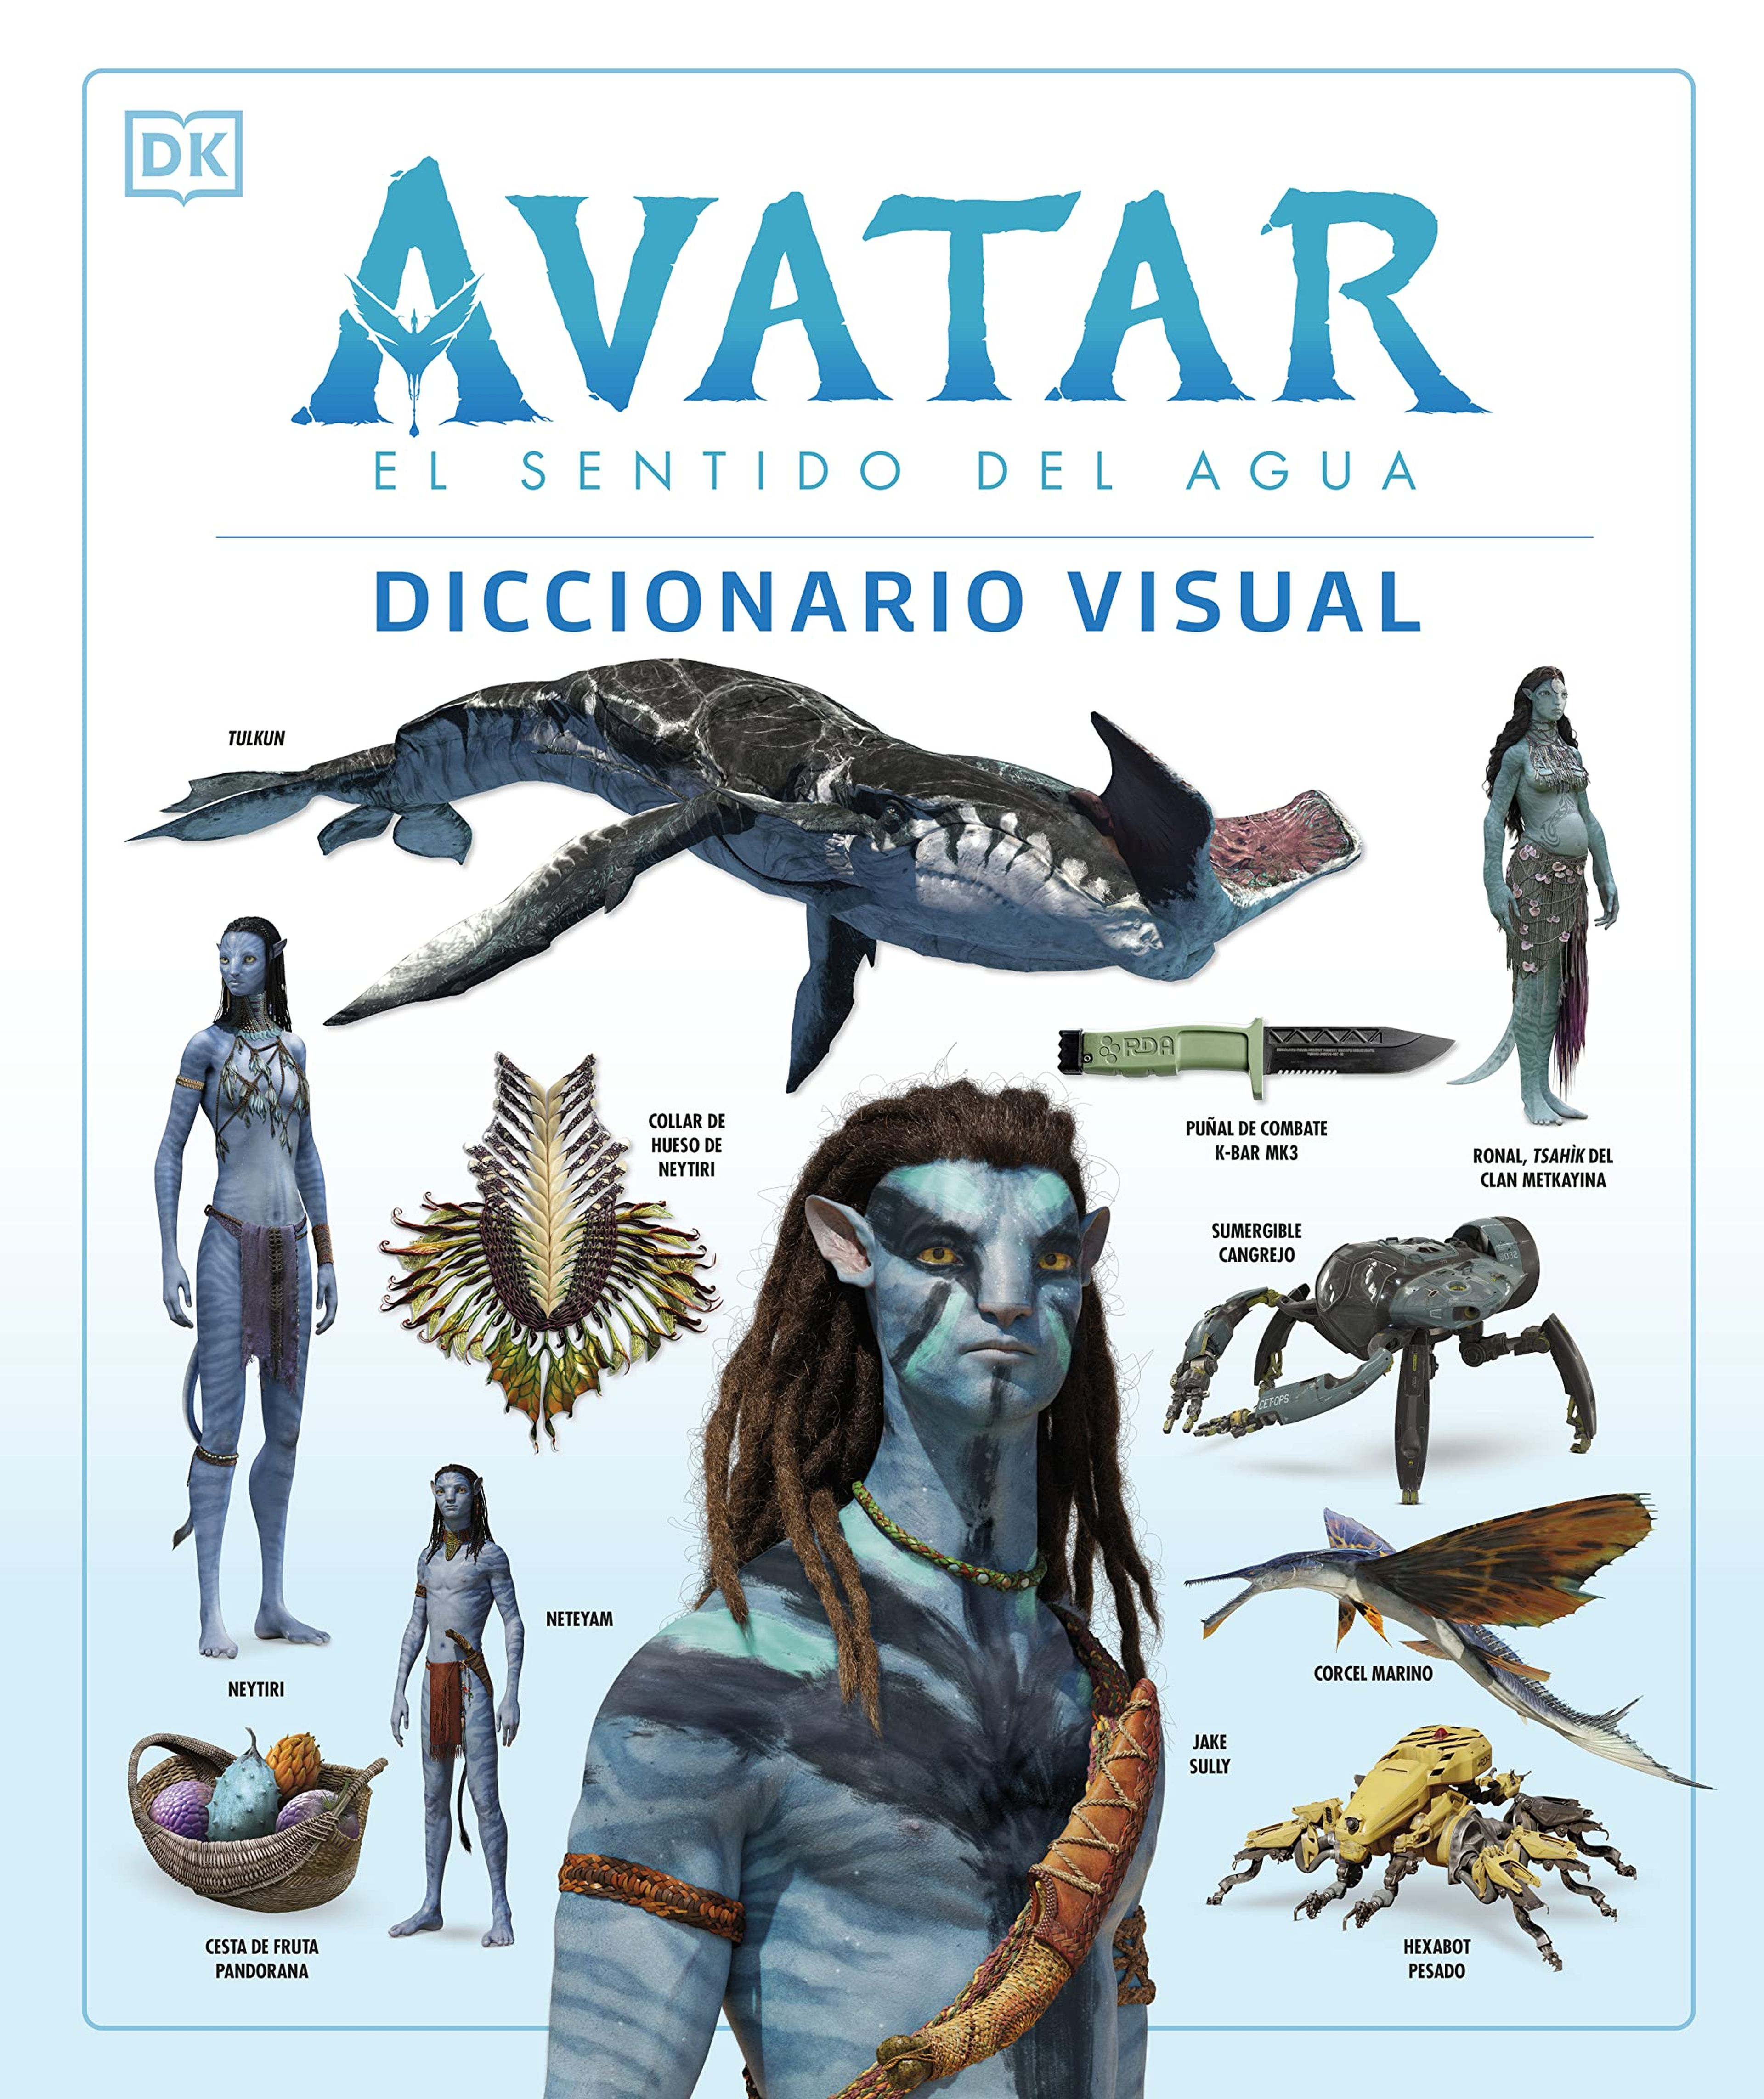 Avatar: El sentido del agua. Diccionario visual y El arte de Avatar: El sentido del agua